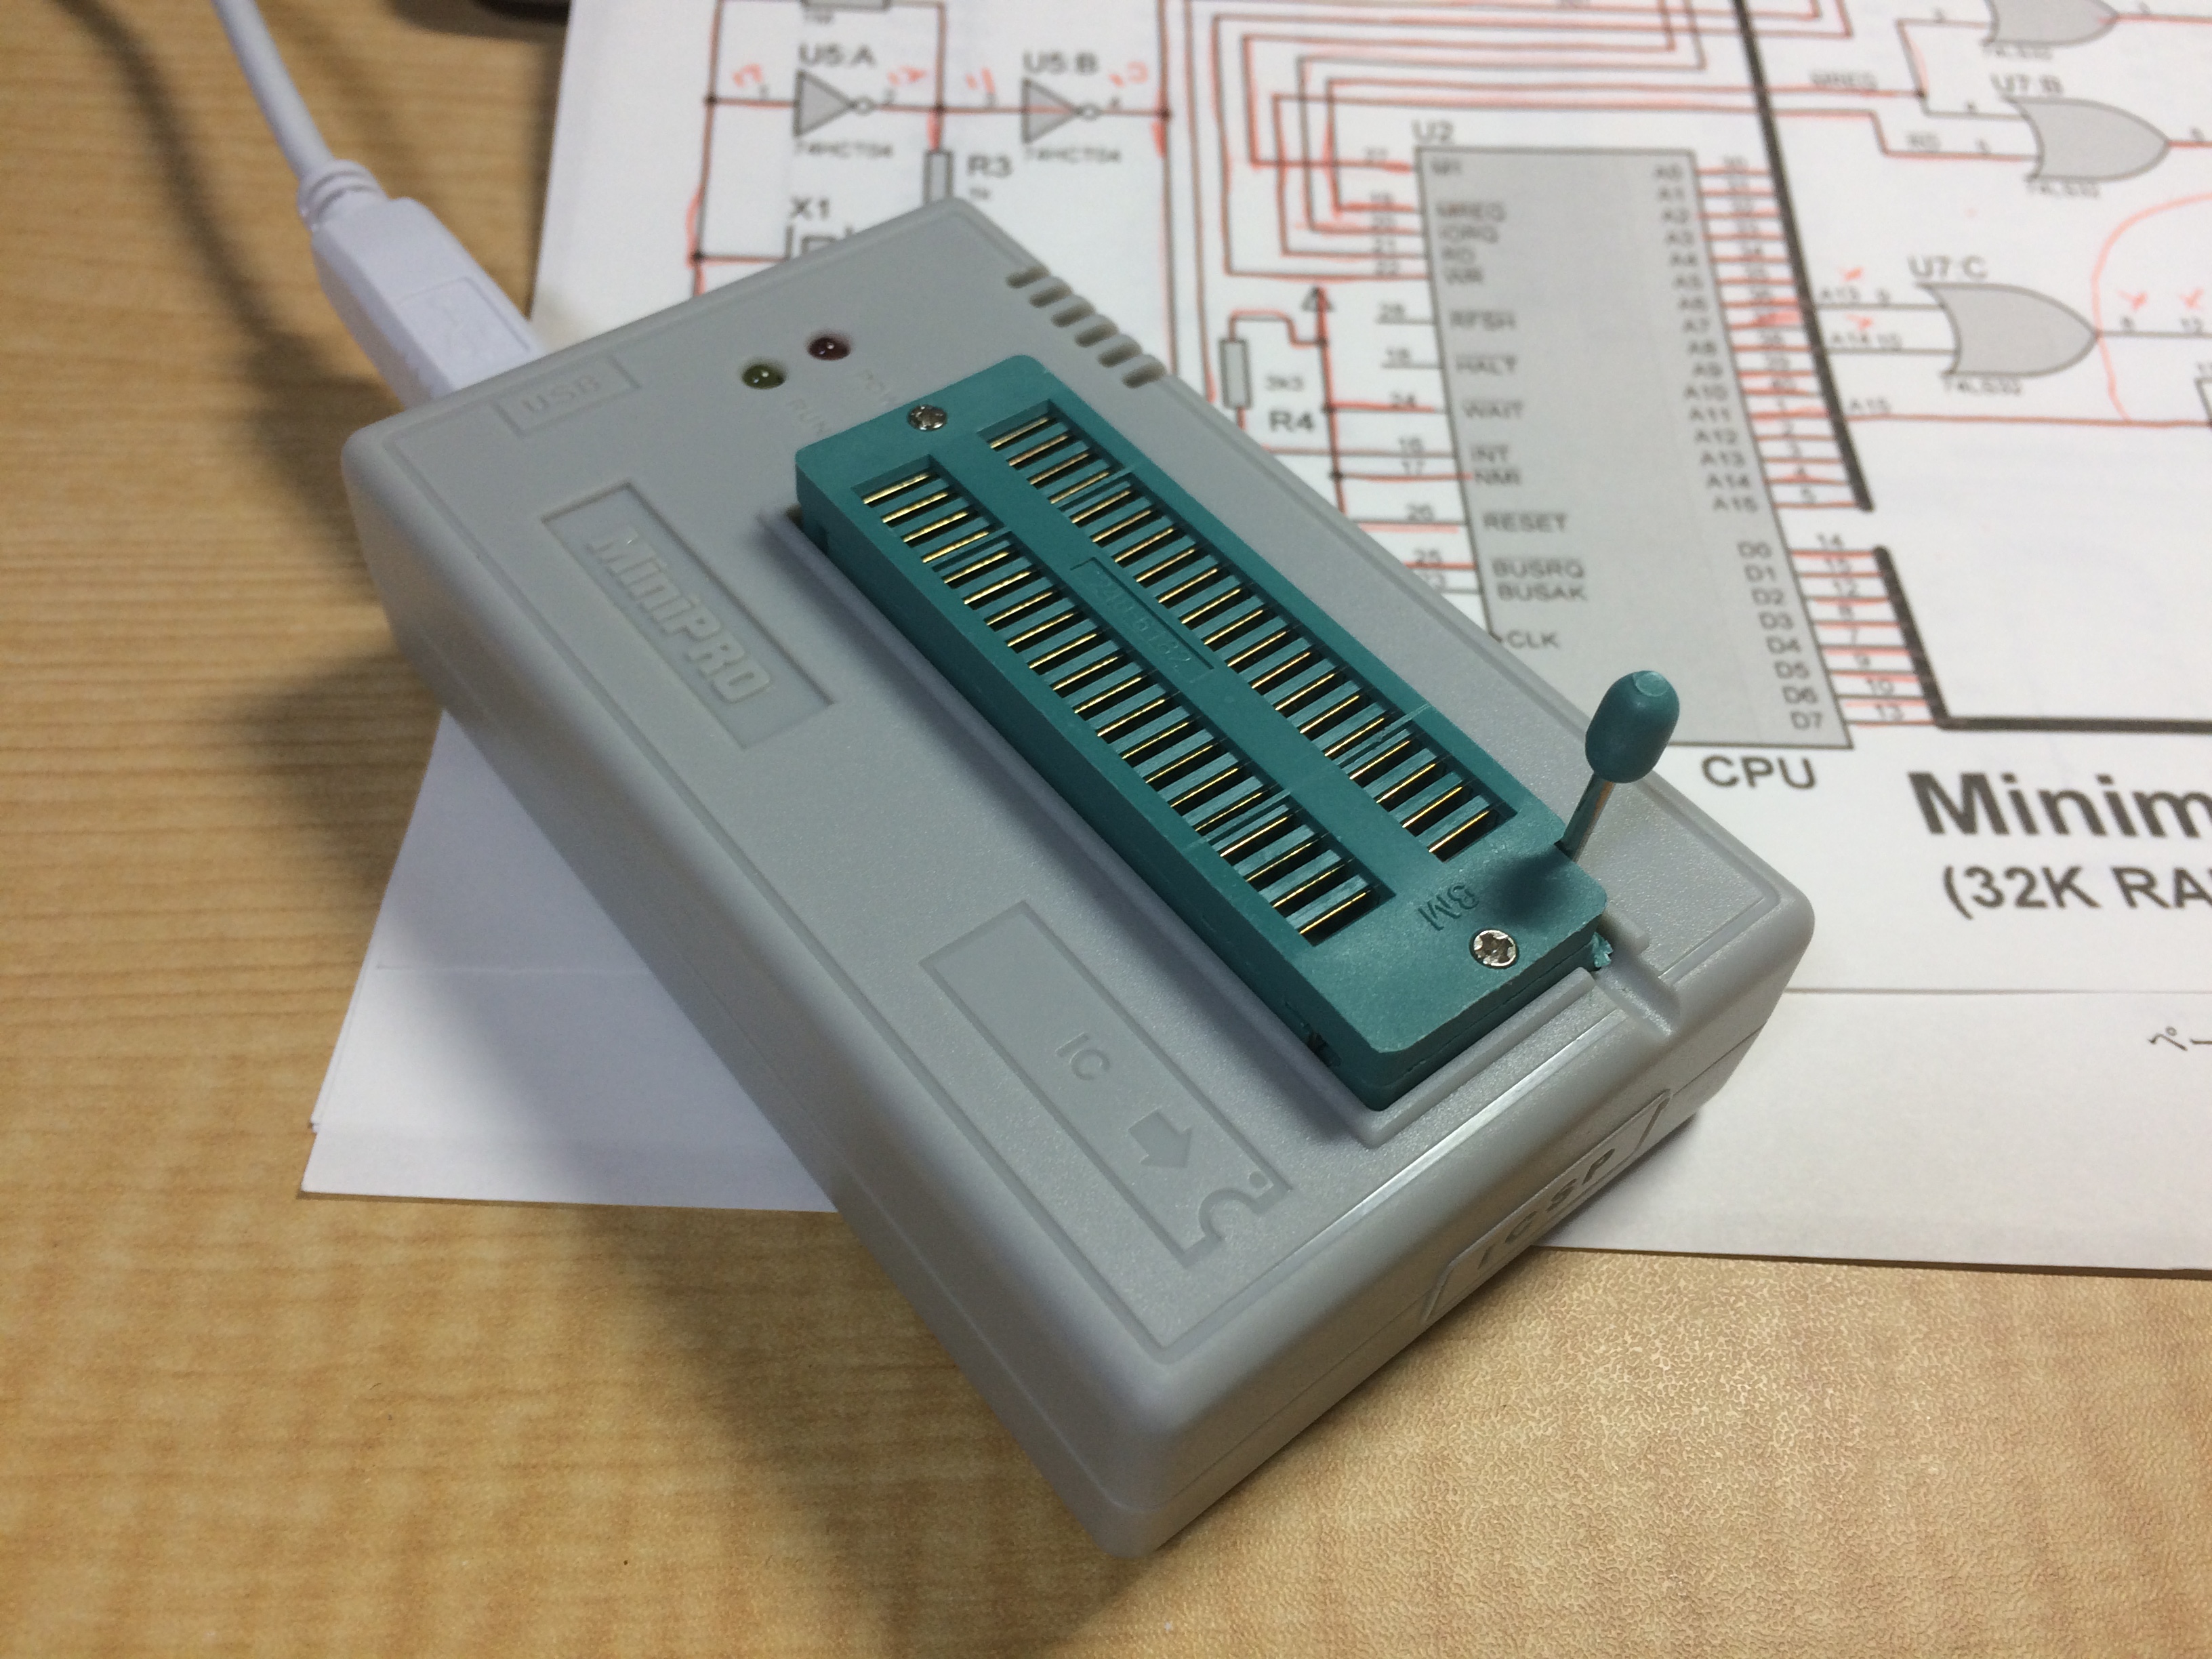 Z80でマイコンをつくる (5)使った部品一覧〜ユニバーサル基板 作成開始 